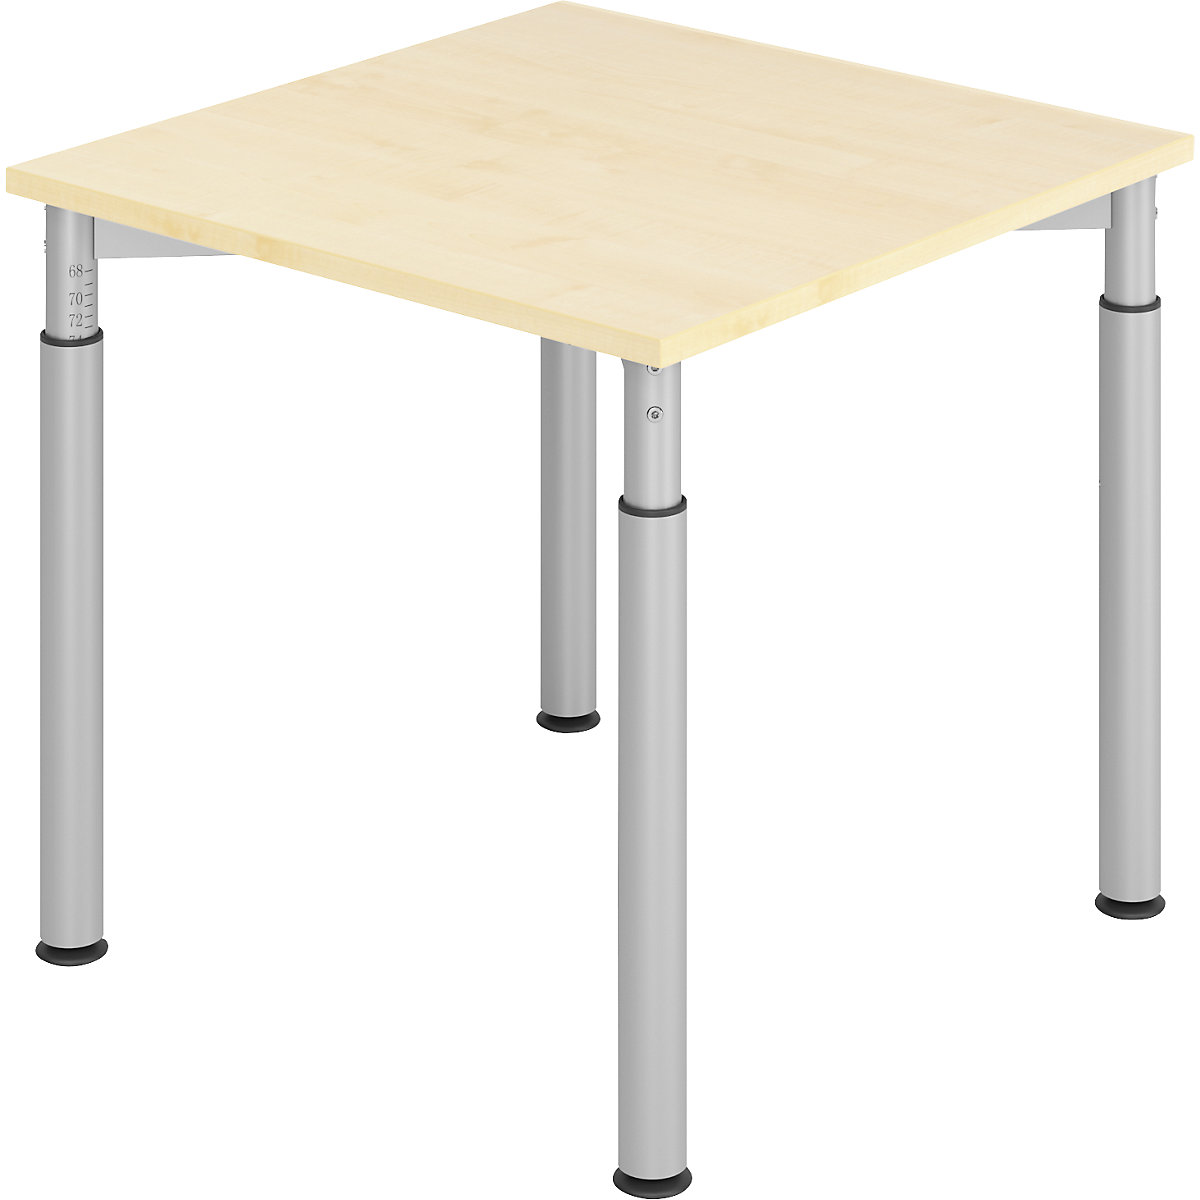 Pisaći stol s postoljem s 4 noge VERA-ZWO, s mogućnošću namještanja visine, ŠxD 800 x 800 mm, ploča u imitaciji javora, postolje u aluminij srebrnoj boji-7